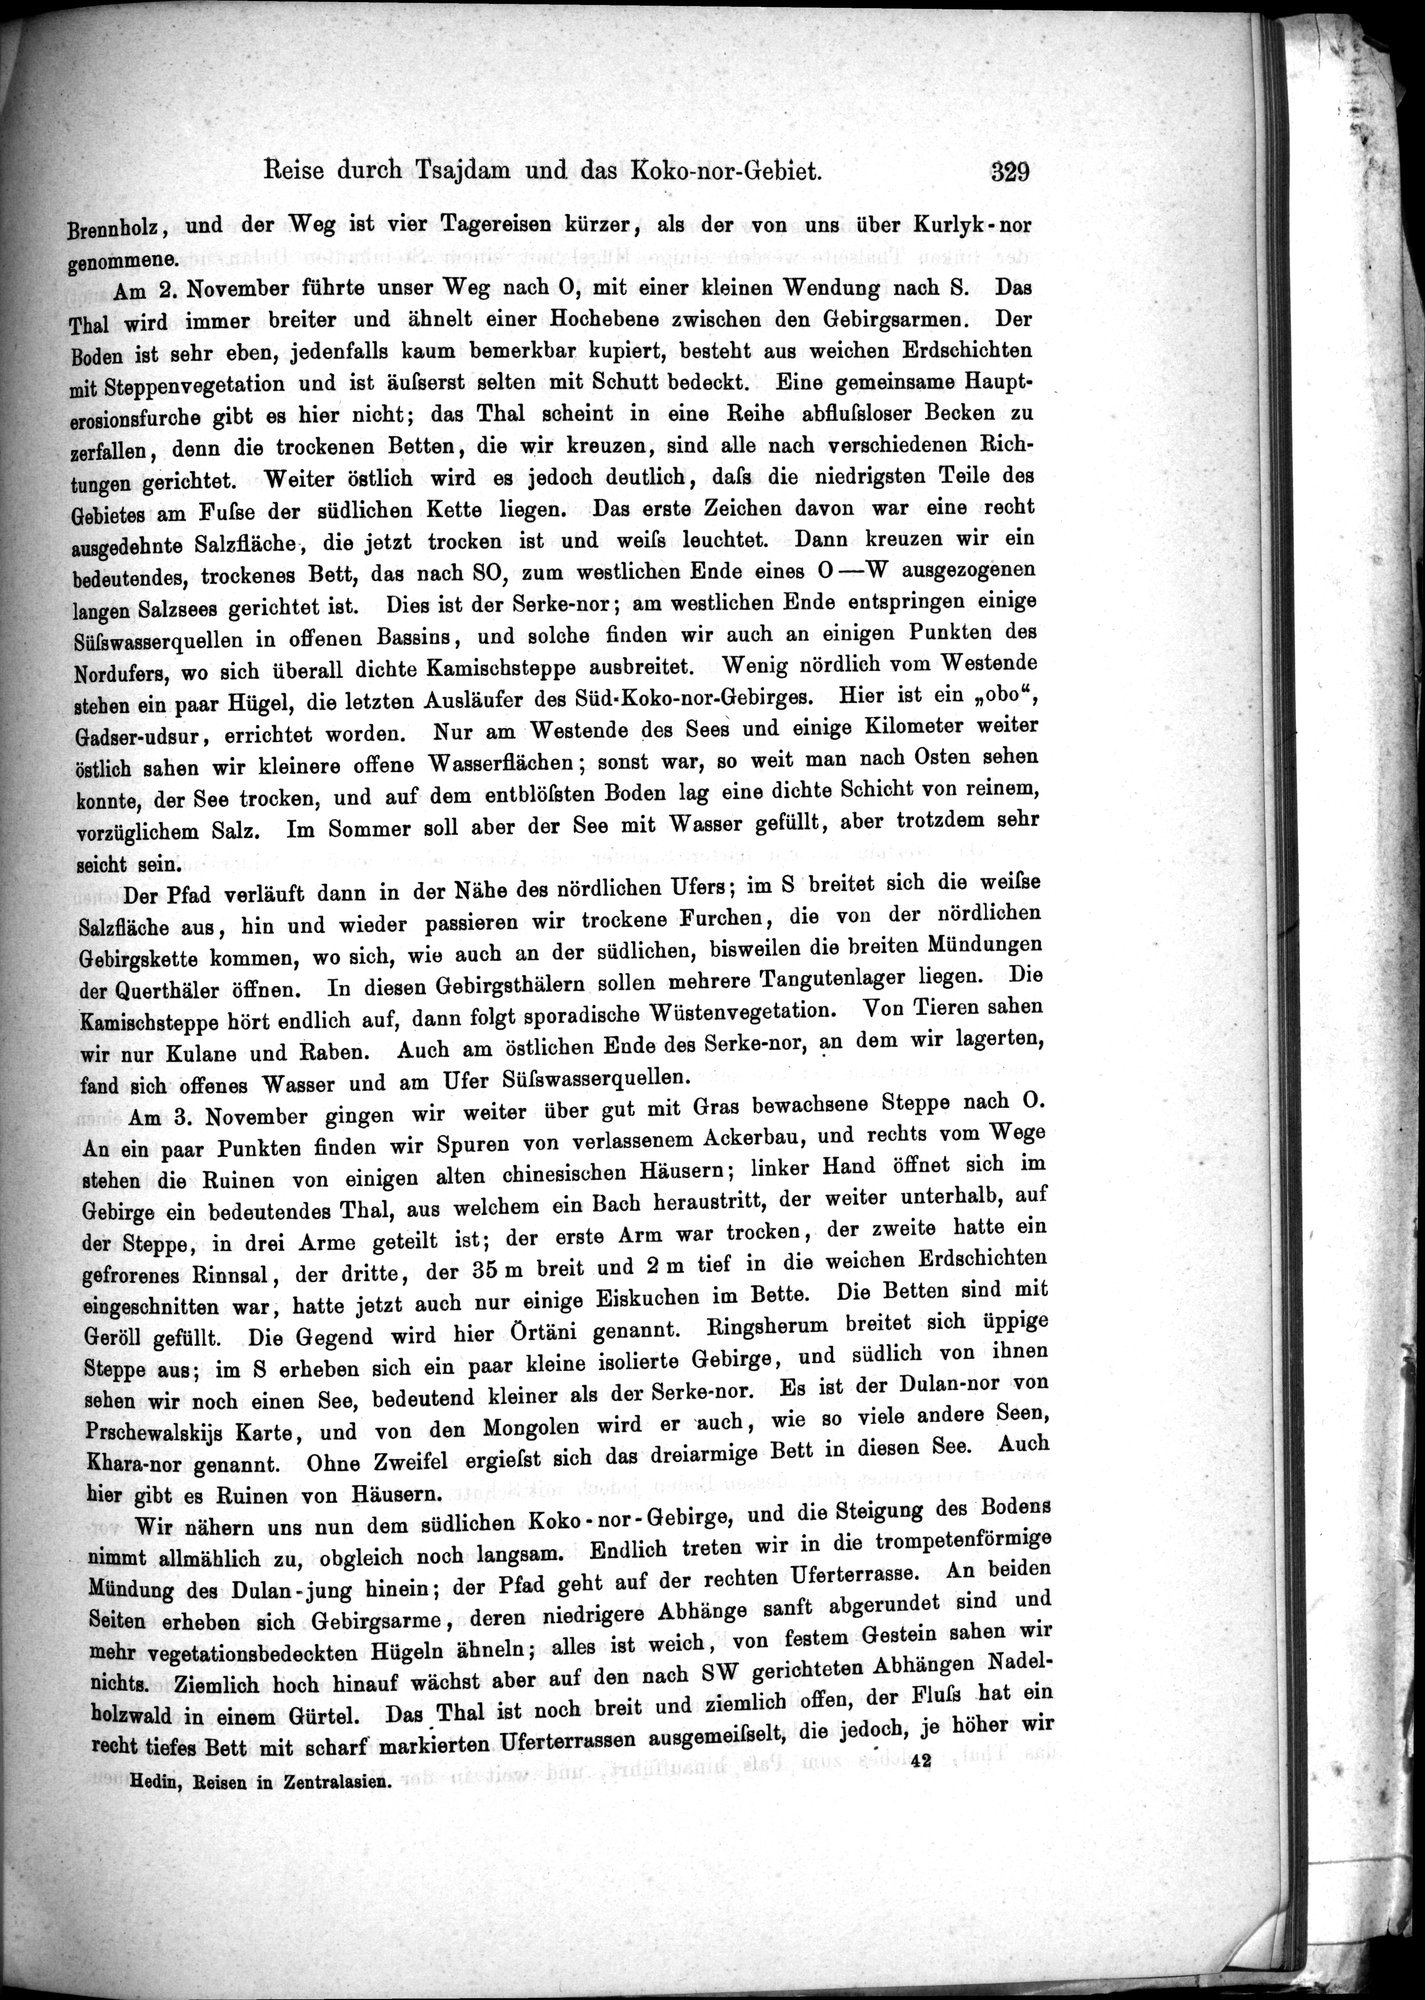 Die Geographische-Wissenschaftlichen Ergebnisse meiner Reisen in Zentralasien, 1894-1897 : vol.1 / Page 341 (Grayscale High Resolution Image)